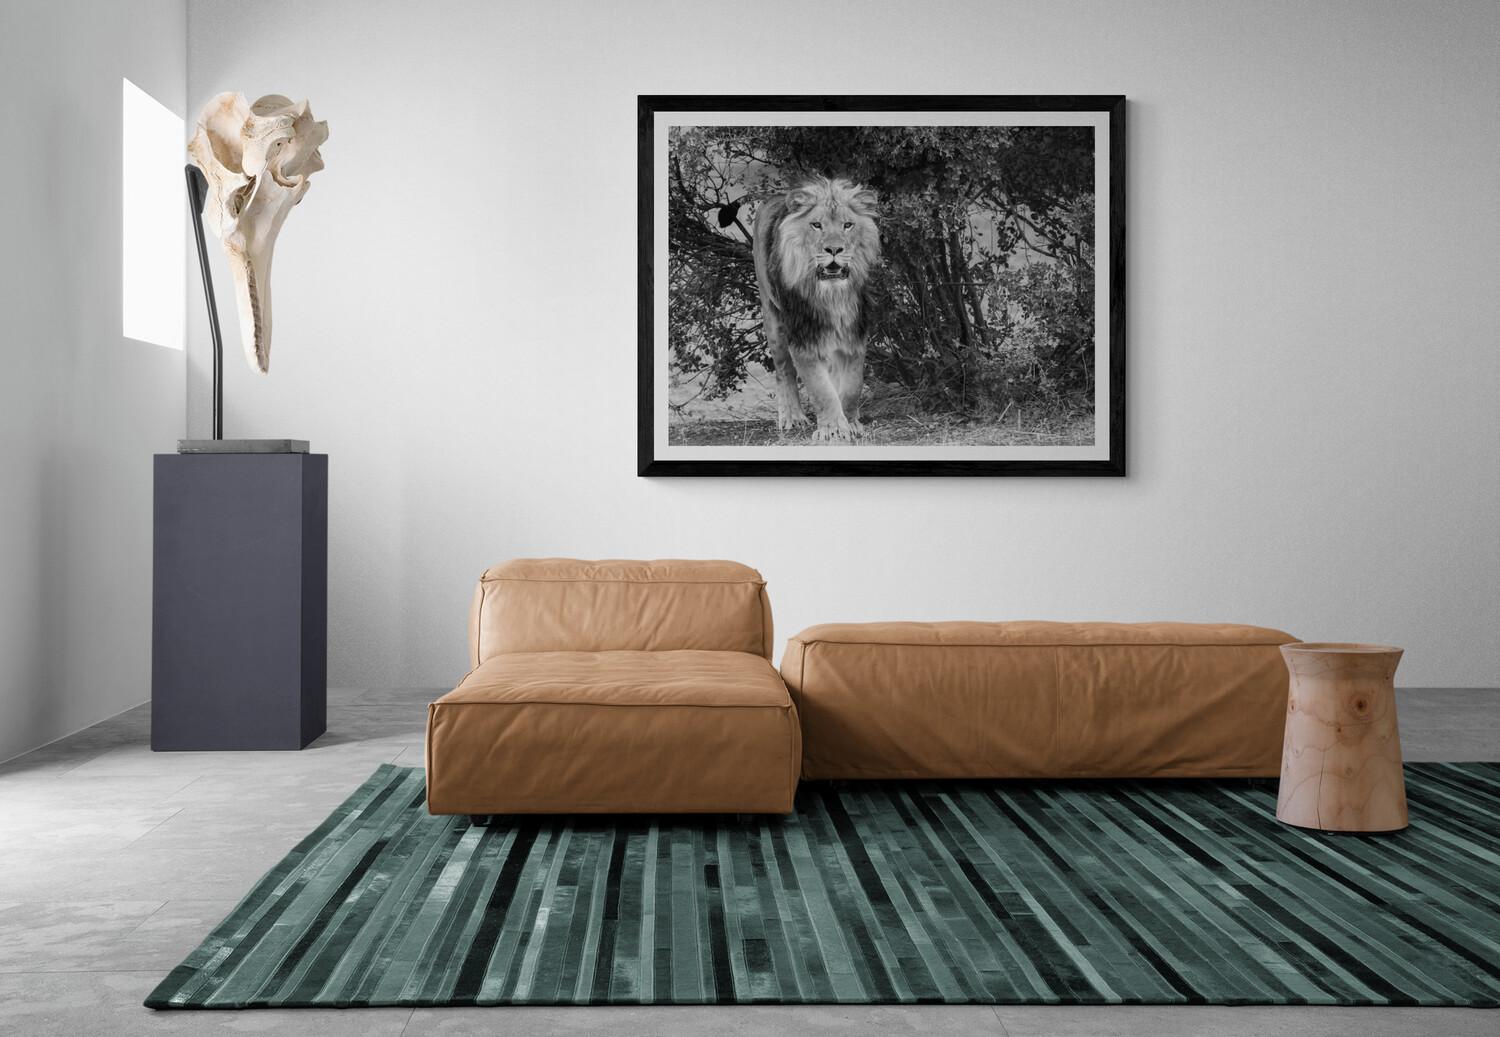 Dies ist ein zeitgenössisches Foto eines afrikanischen Löwen, aufgenommen von Shane Russeck.
Auflage von 10 Stück
Signiert und nummeriert 
Gedruckt auf Archiv-Glanzpapier.  

Shane Russeck hat sich den Ruf erworben, Amerikas Landschaften, Kulturen